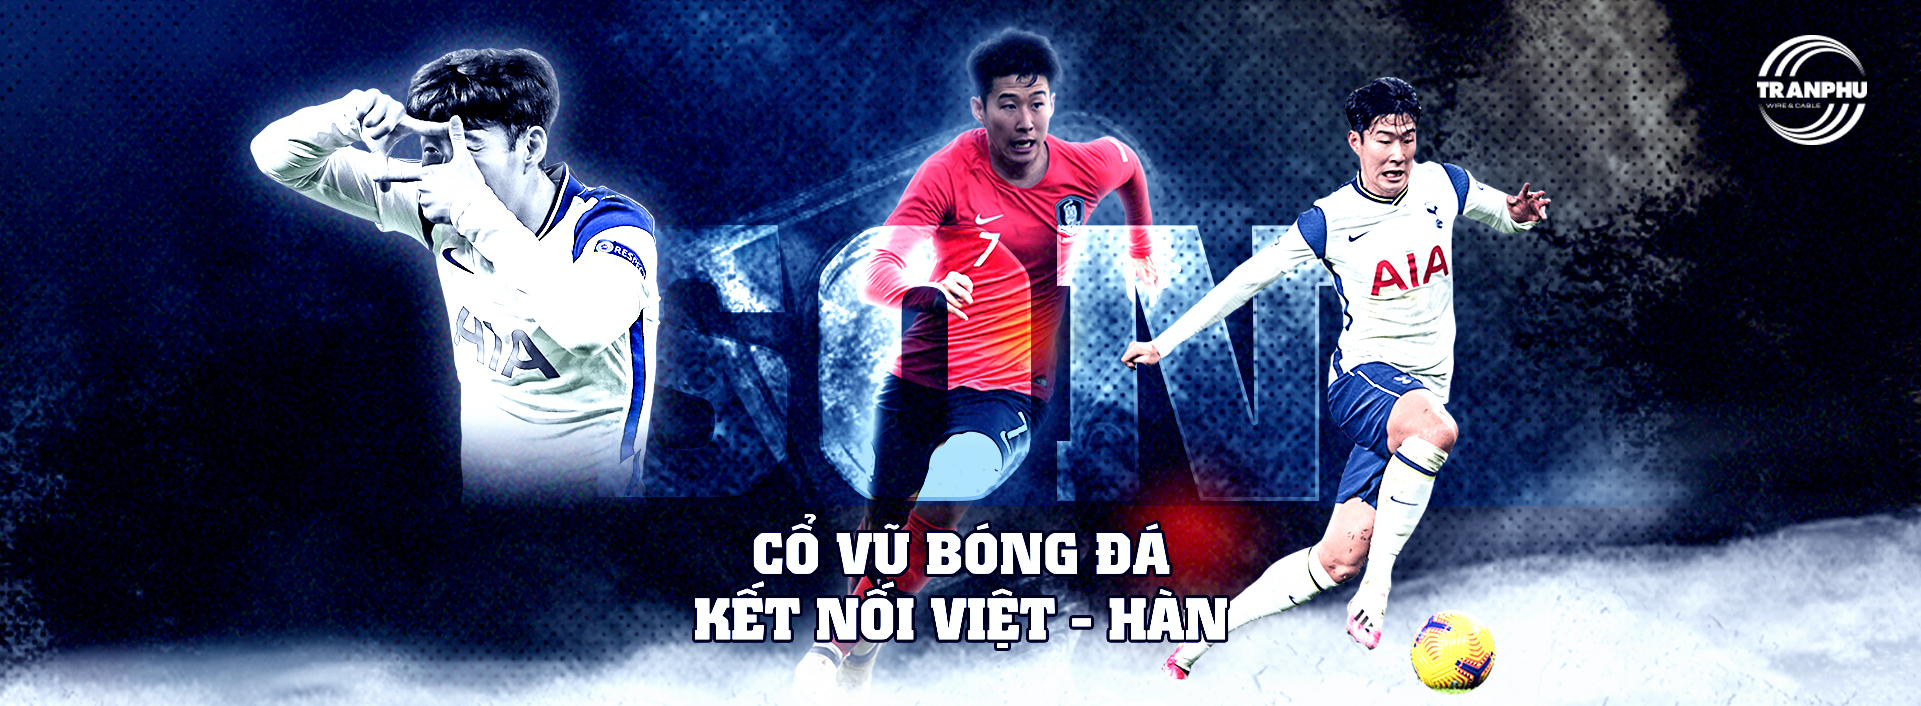 Highlight Cổ vũ bóng đá, kết nối Việt - Hàn